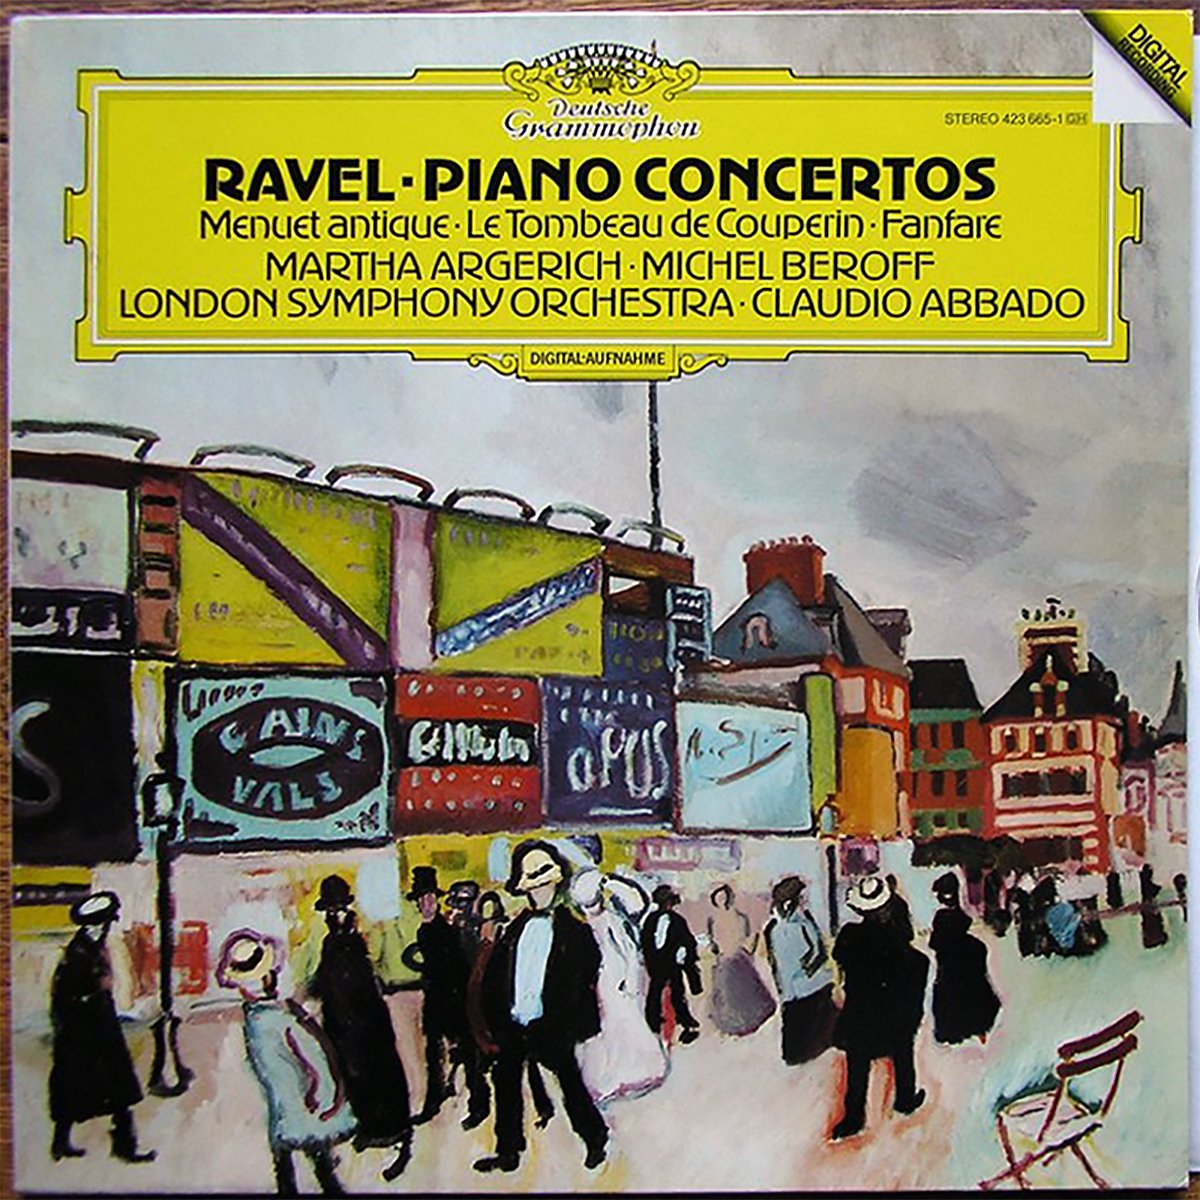 DGG 423 665 Ravel Concertos Piano Argerich Beroff Abbado DGG Digital Aufnahme